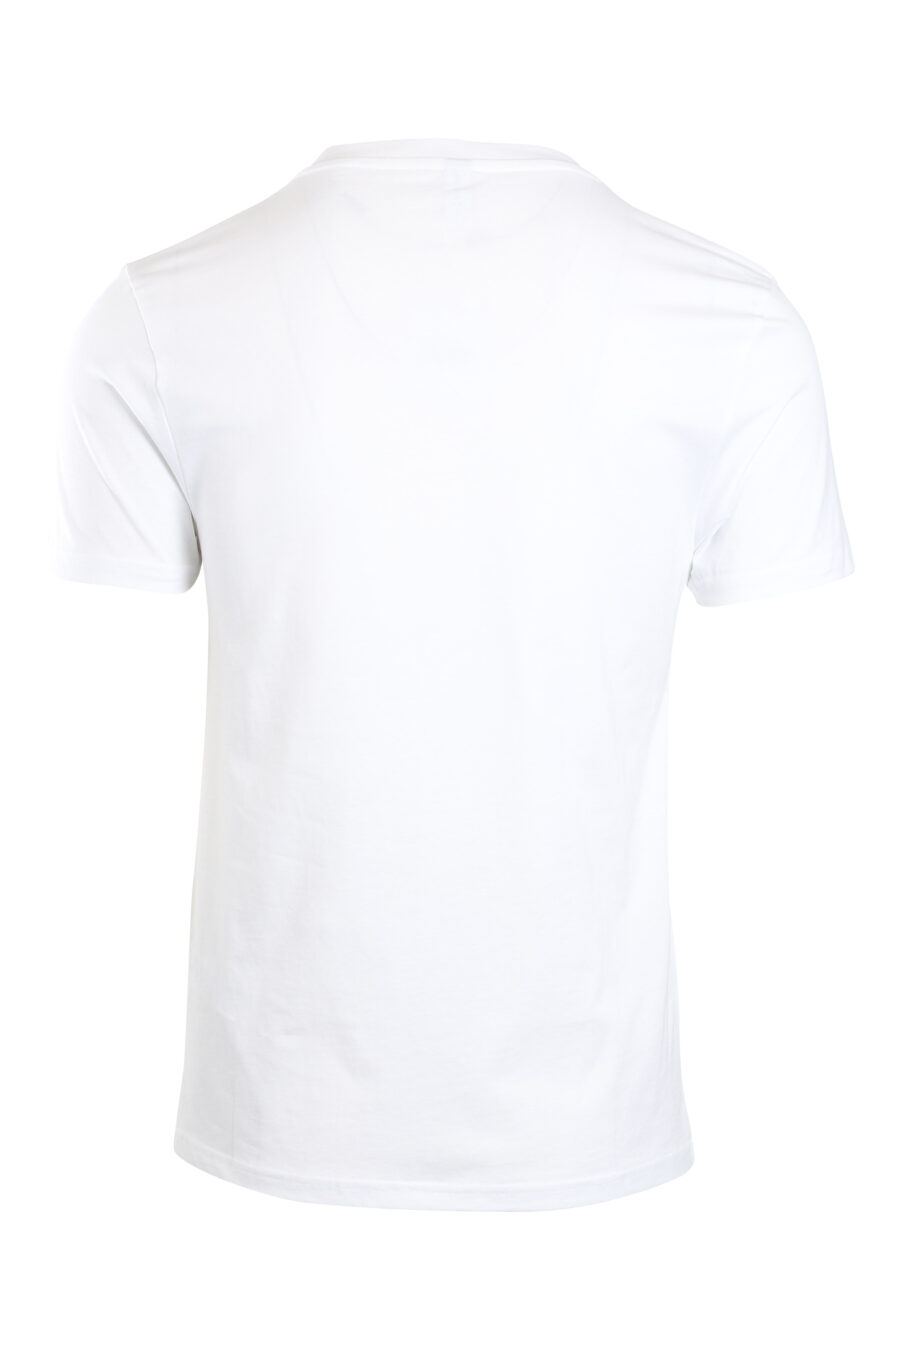 Camiseta blanca con logo en banda en hombros - IMG 2155